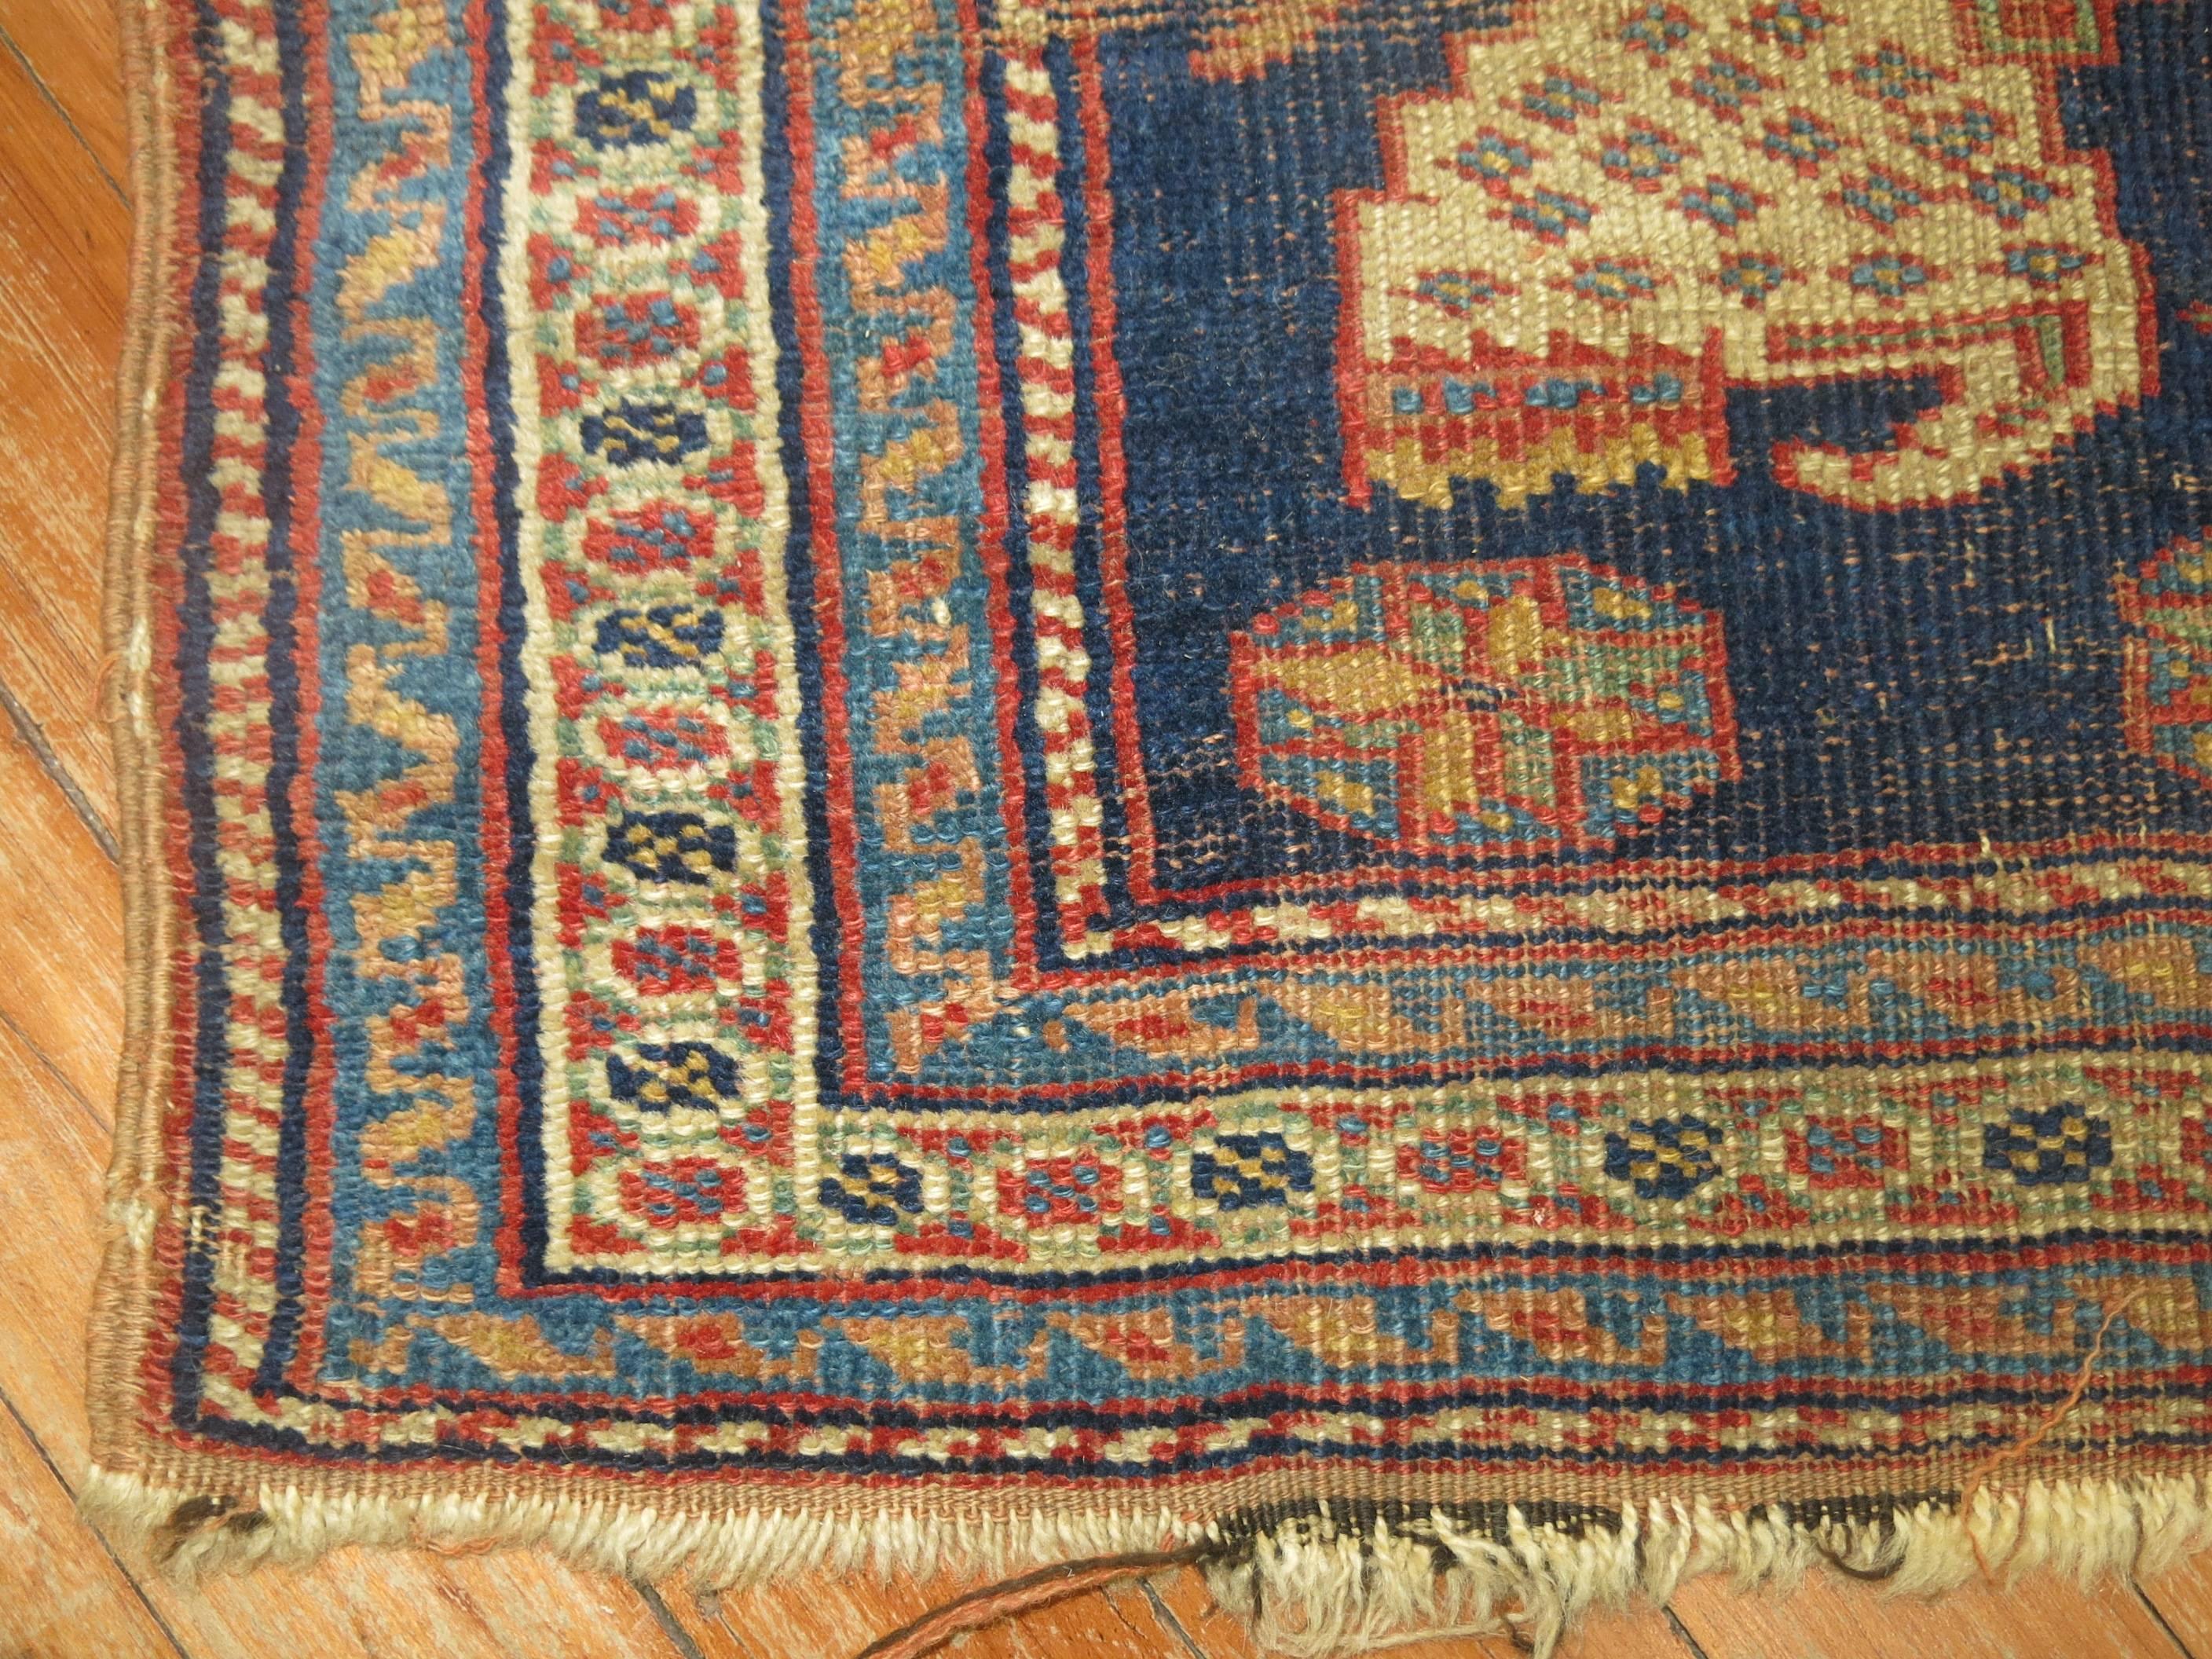 19th century Persian bagface textile rug

Measures: 1'11'' x 2'2''.